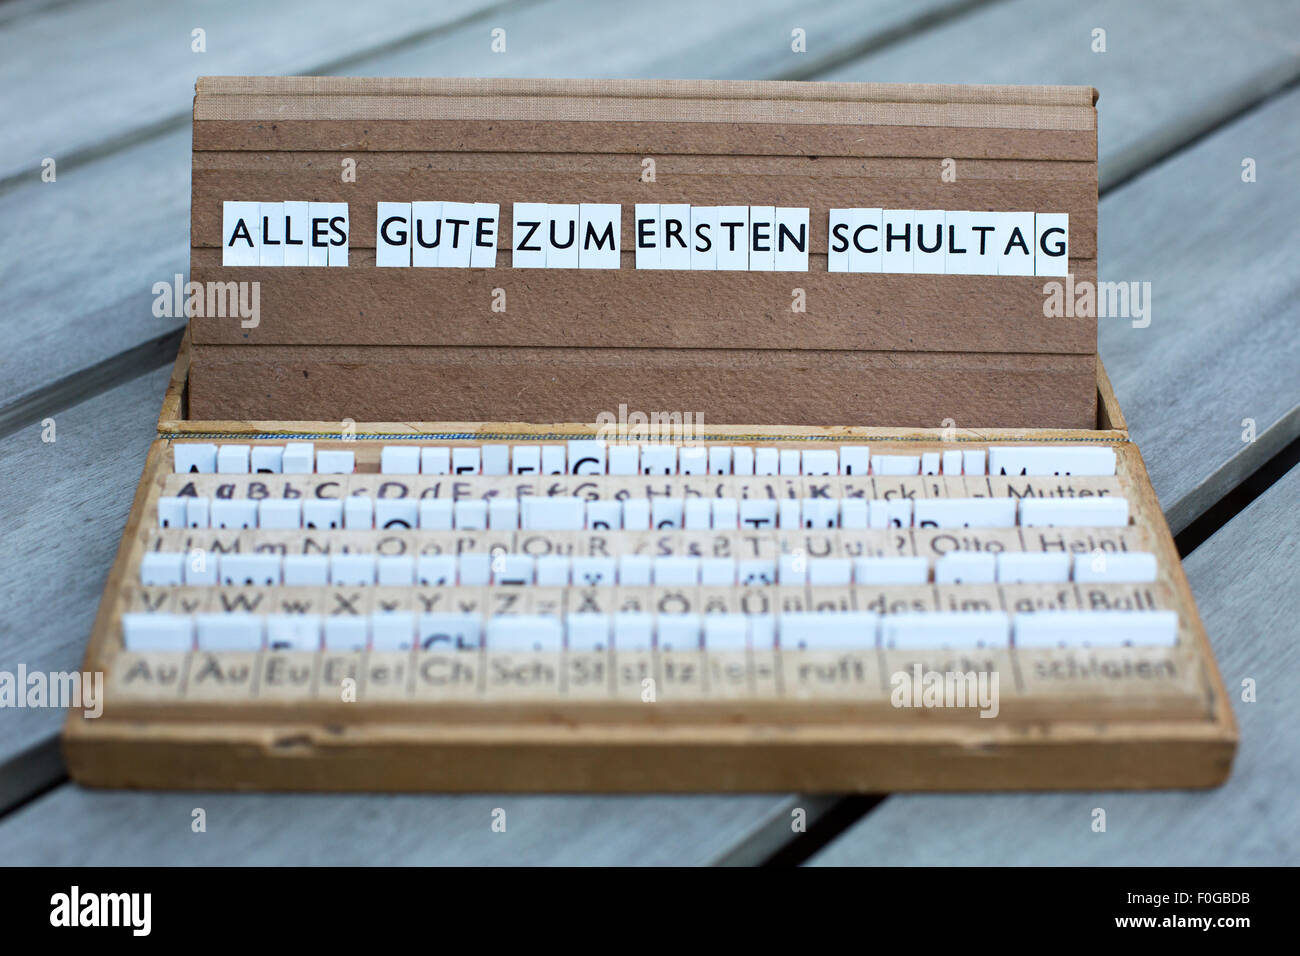 ein Briefkasten mit deutschem Text: "Alles Gute Zum Ersten Schultag" (alles  Gute für Ihren ersten Tag in der Schule Stockfotografie - Alamy